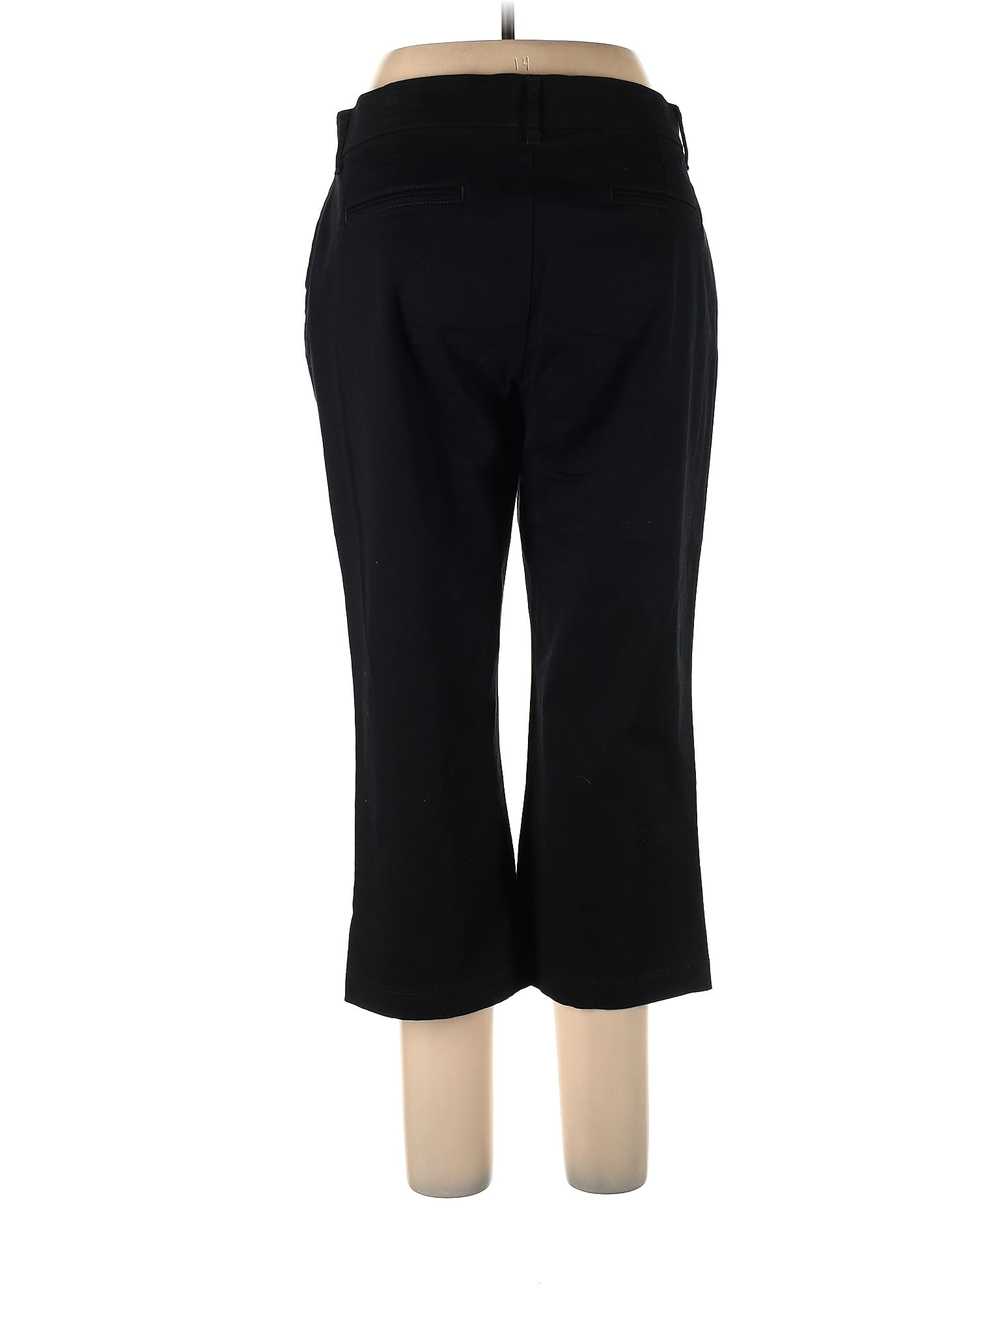 JM Collection Women Black Dress Pants 12 - image 2